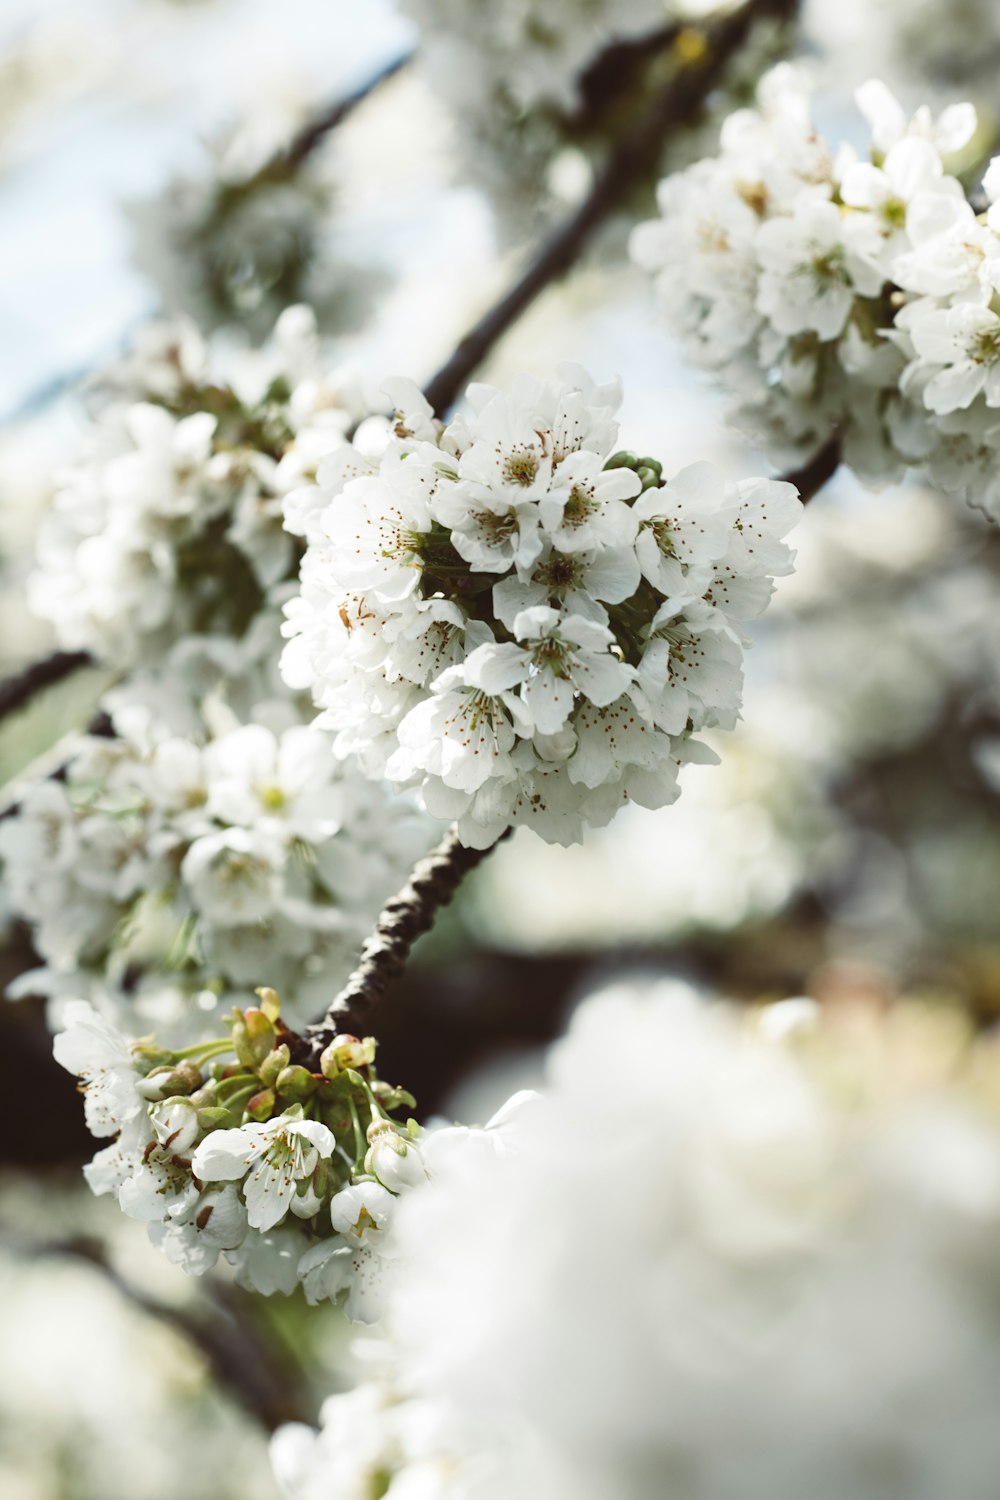 fleur de cerisier blanc en gros plan photographie